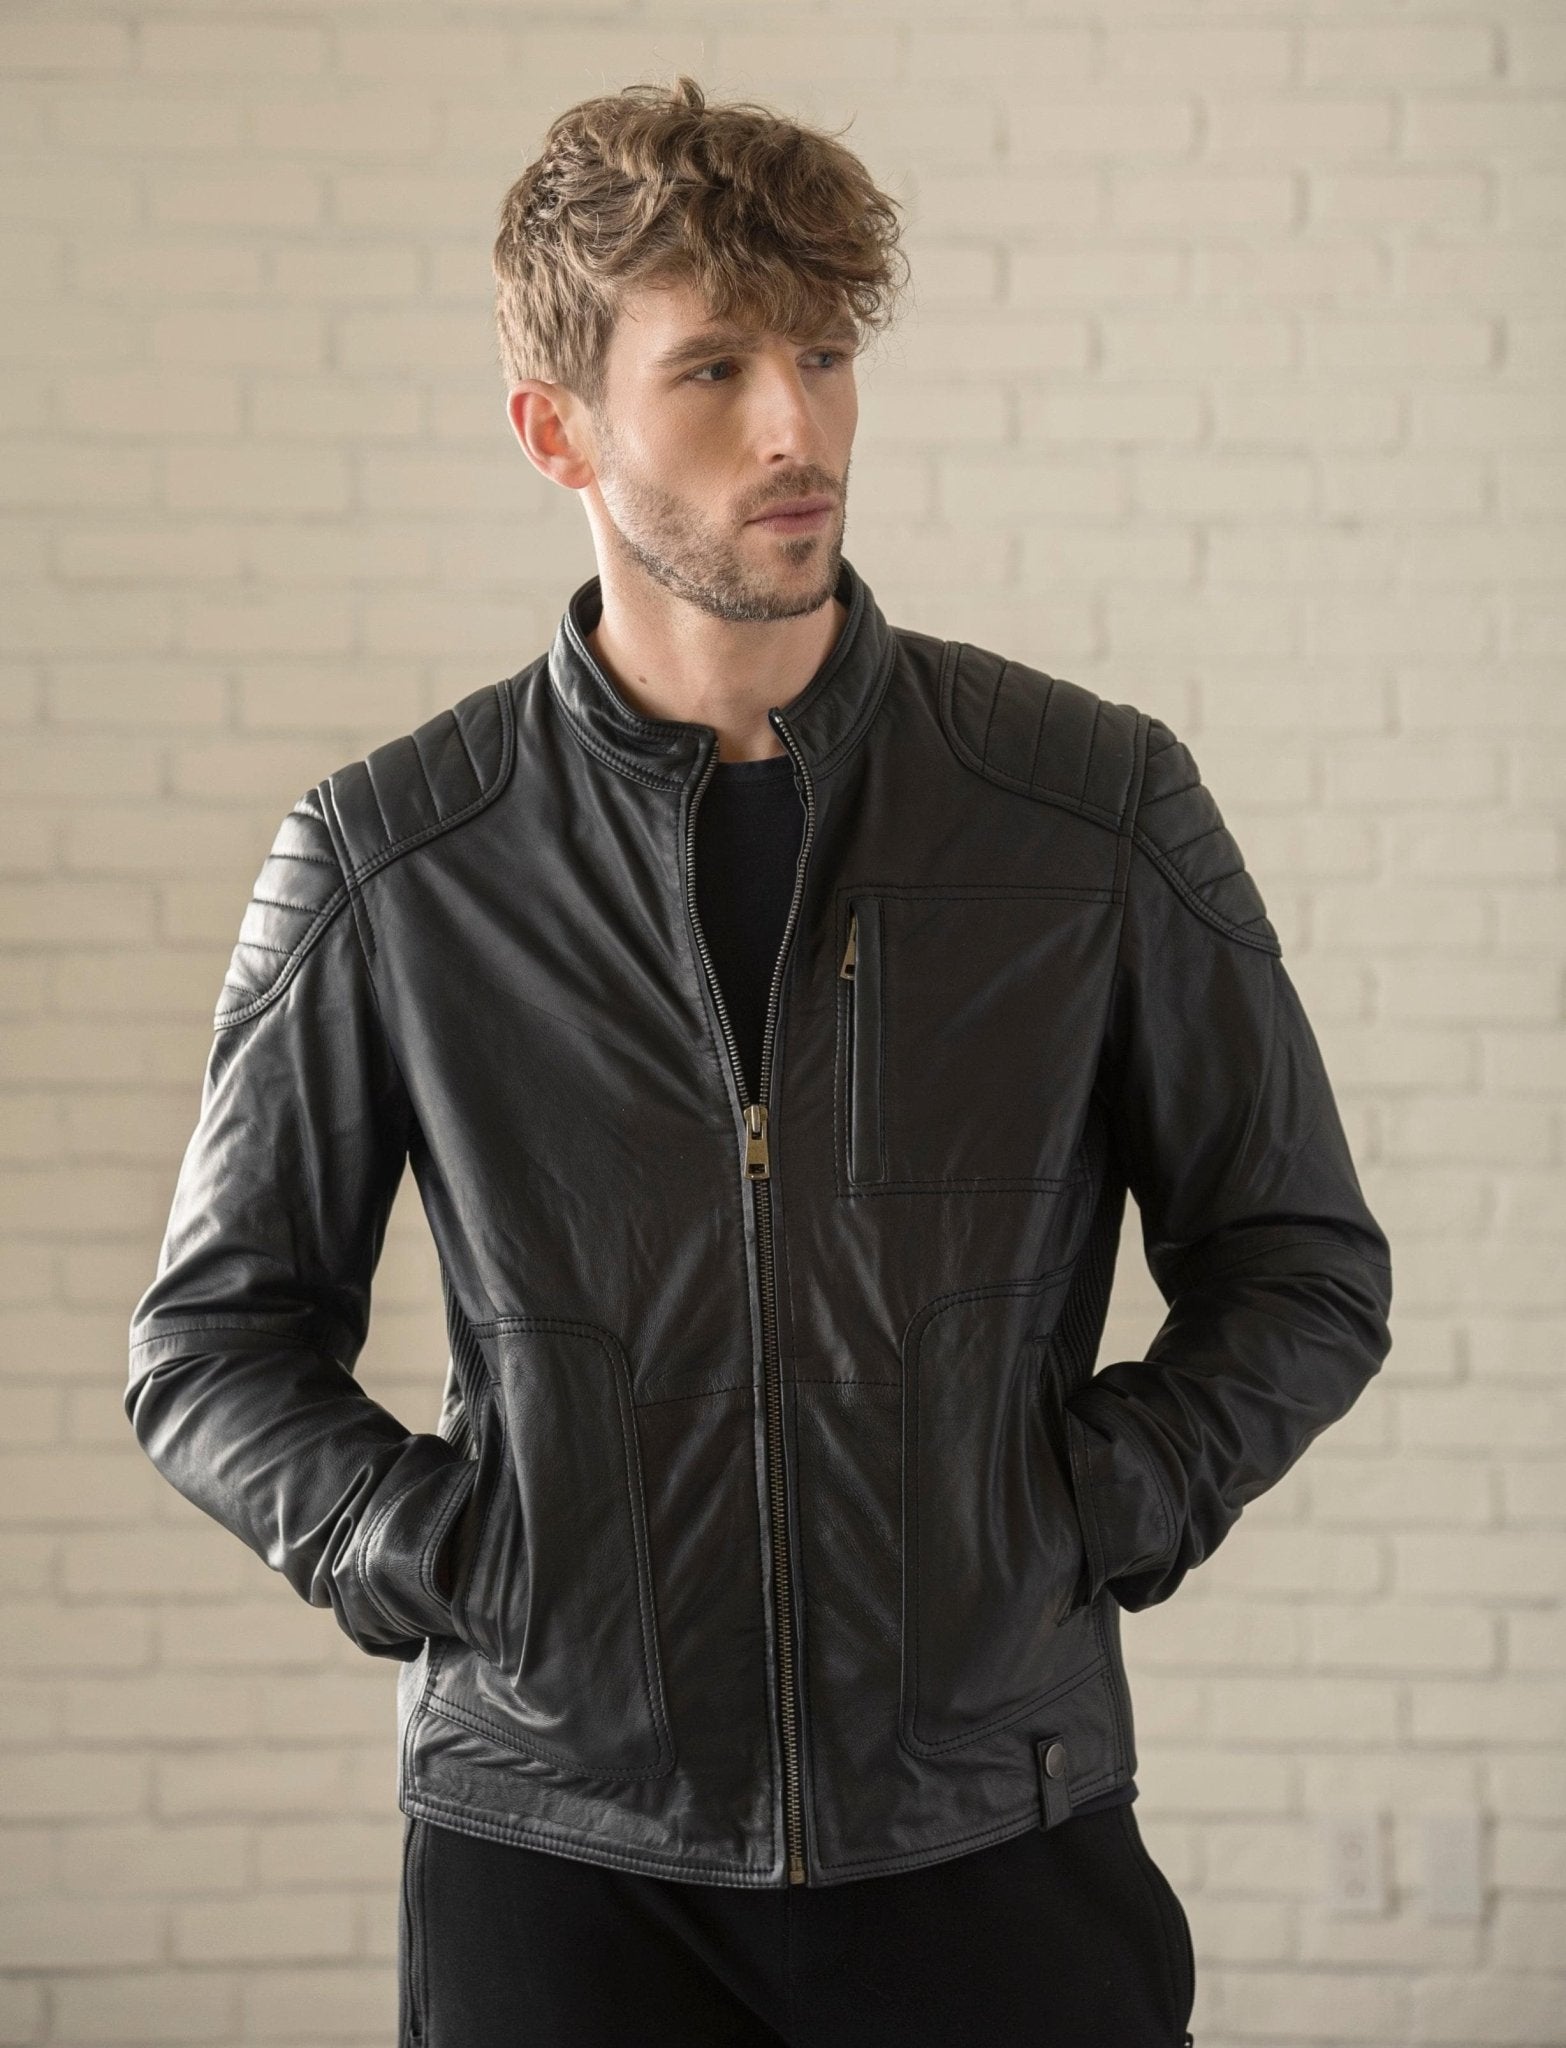 Men's Leather Jackets – HIDES